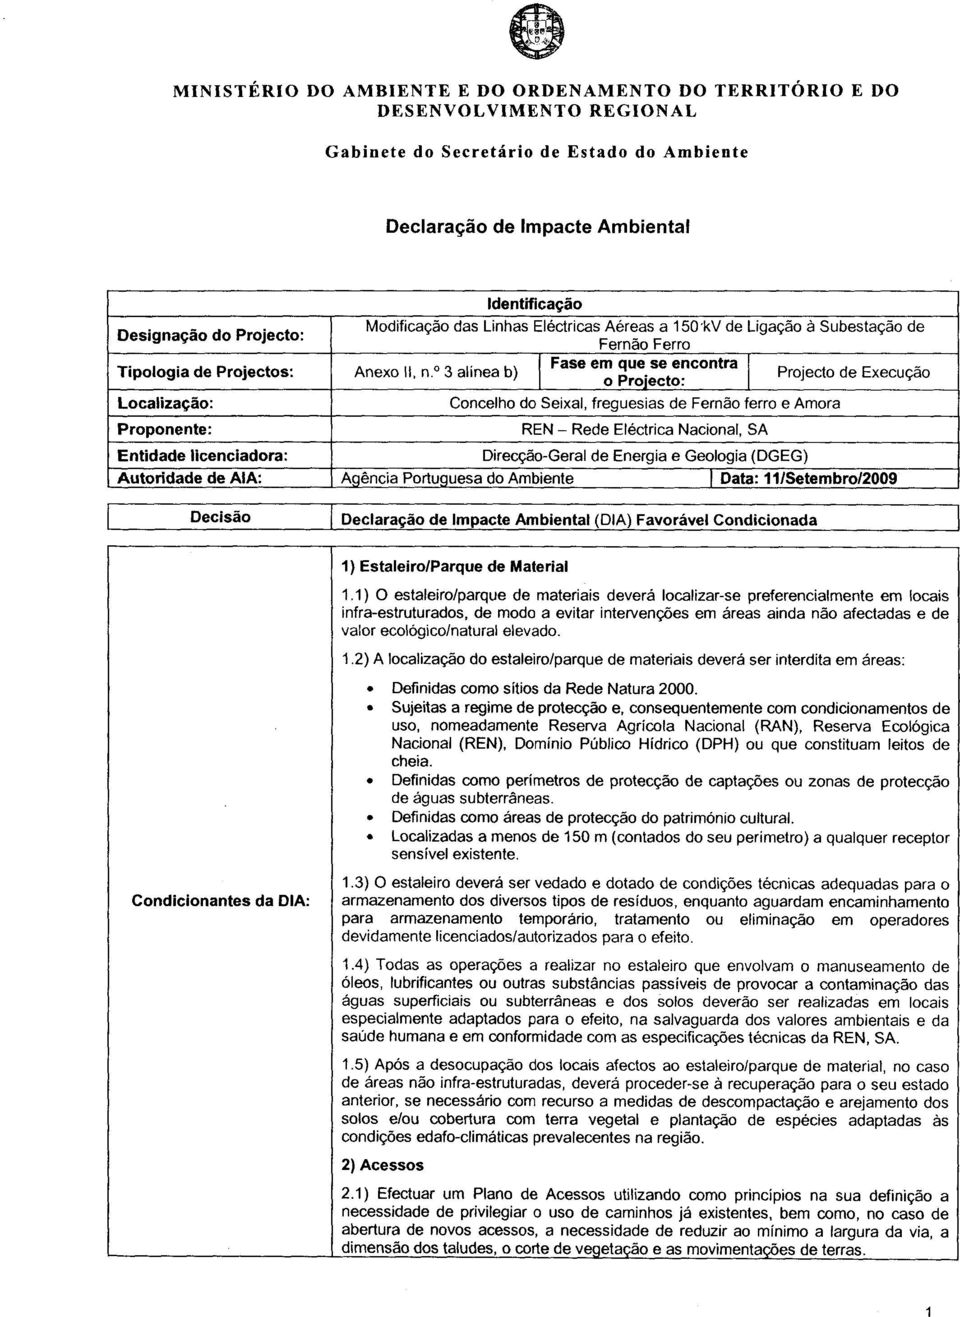 licenciadora: Direcção-Geral de Energia e Geologia (DGEG) Autoridade de AIA: Agência Portuguesa do Ambiente!